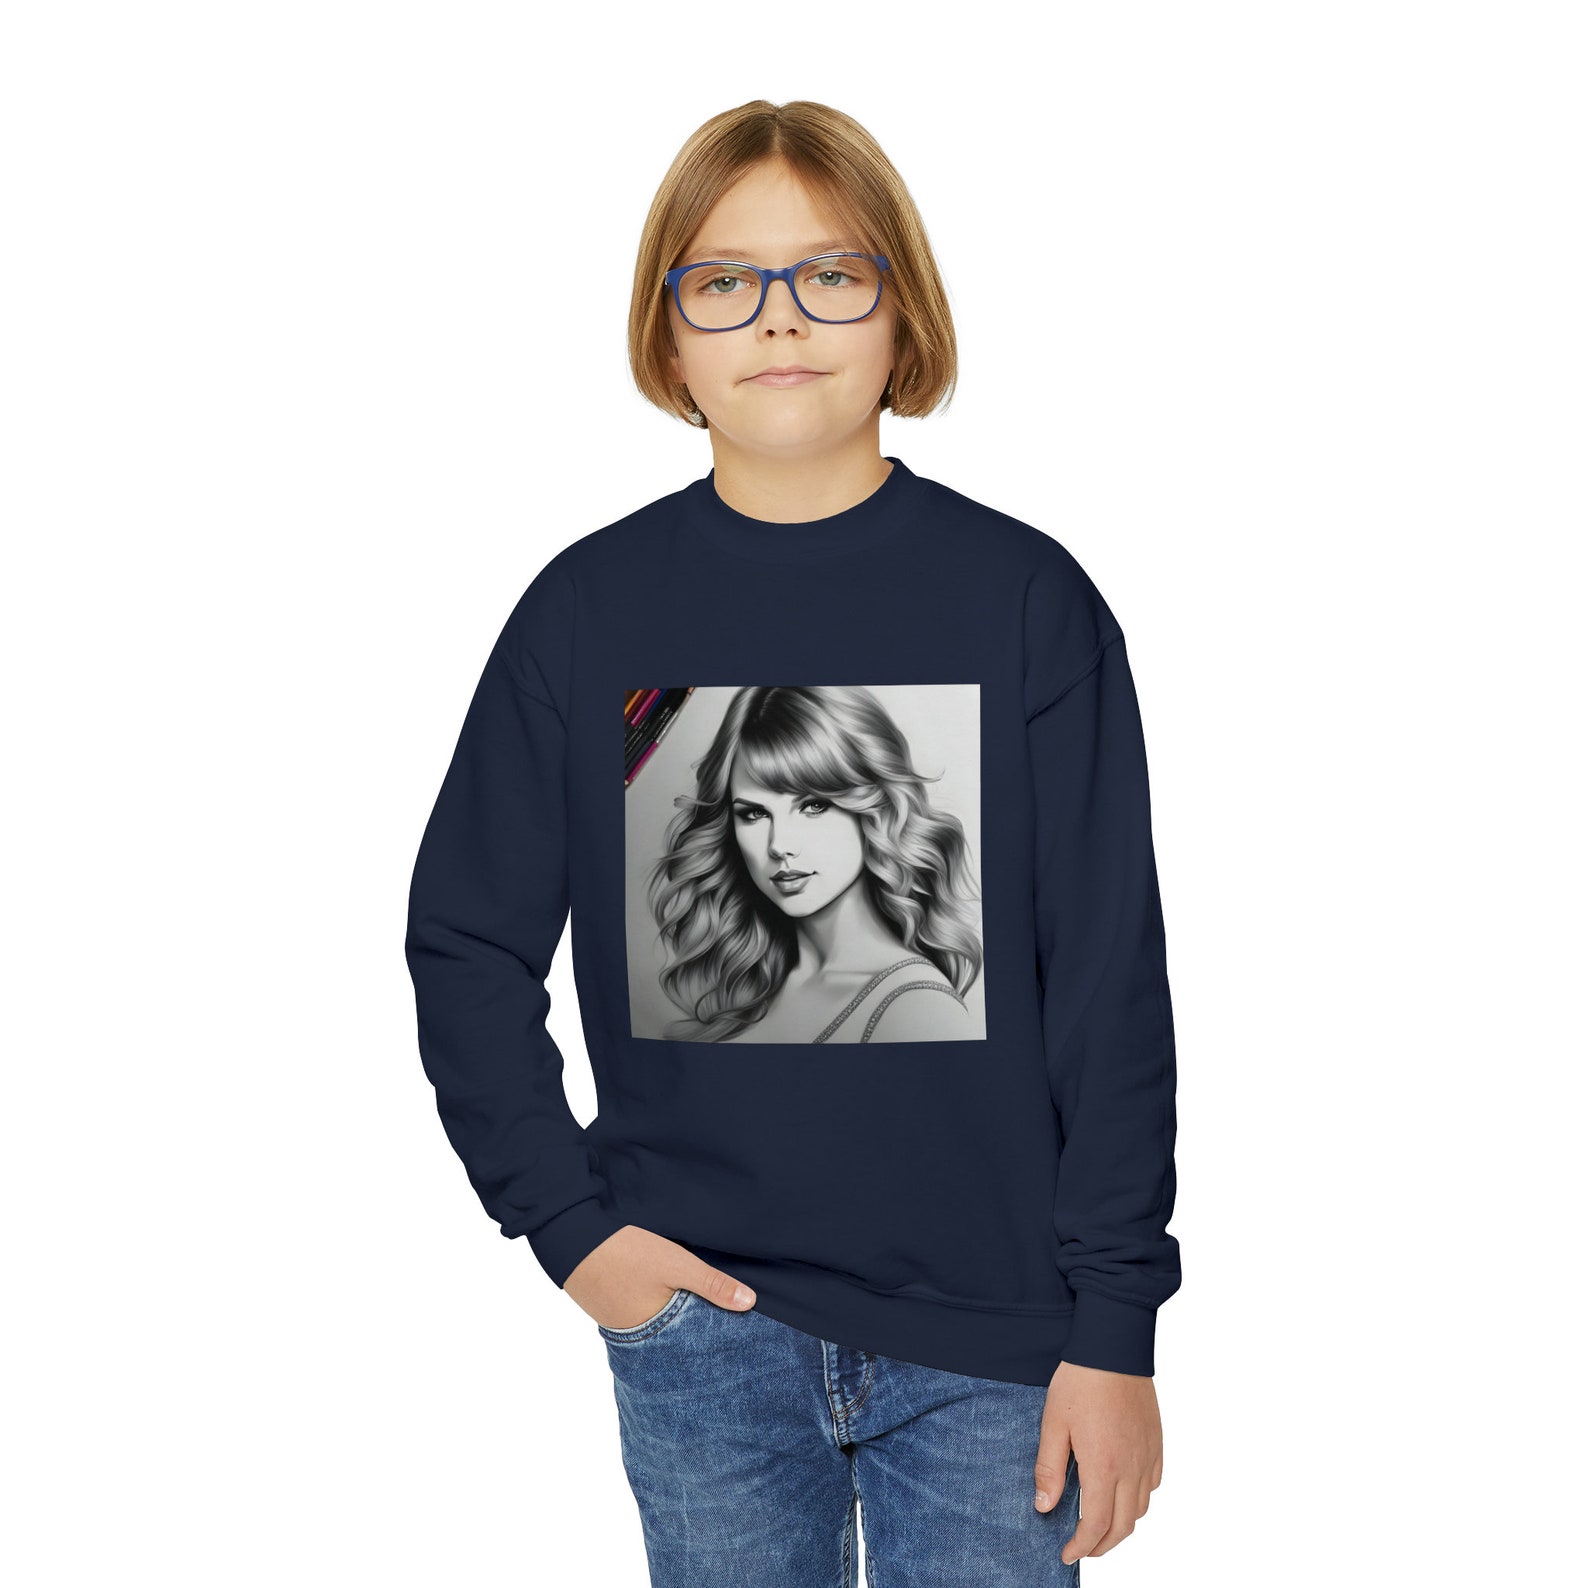 Swiftie Kids Sweater Taylor Swift Kids Shirt Taylor Swift - Etsy